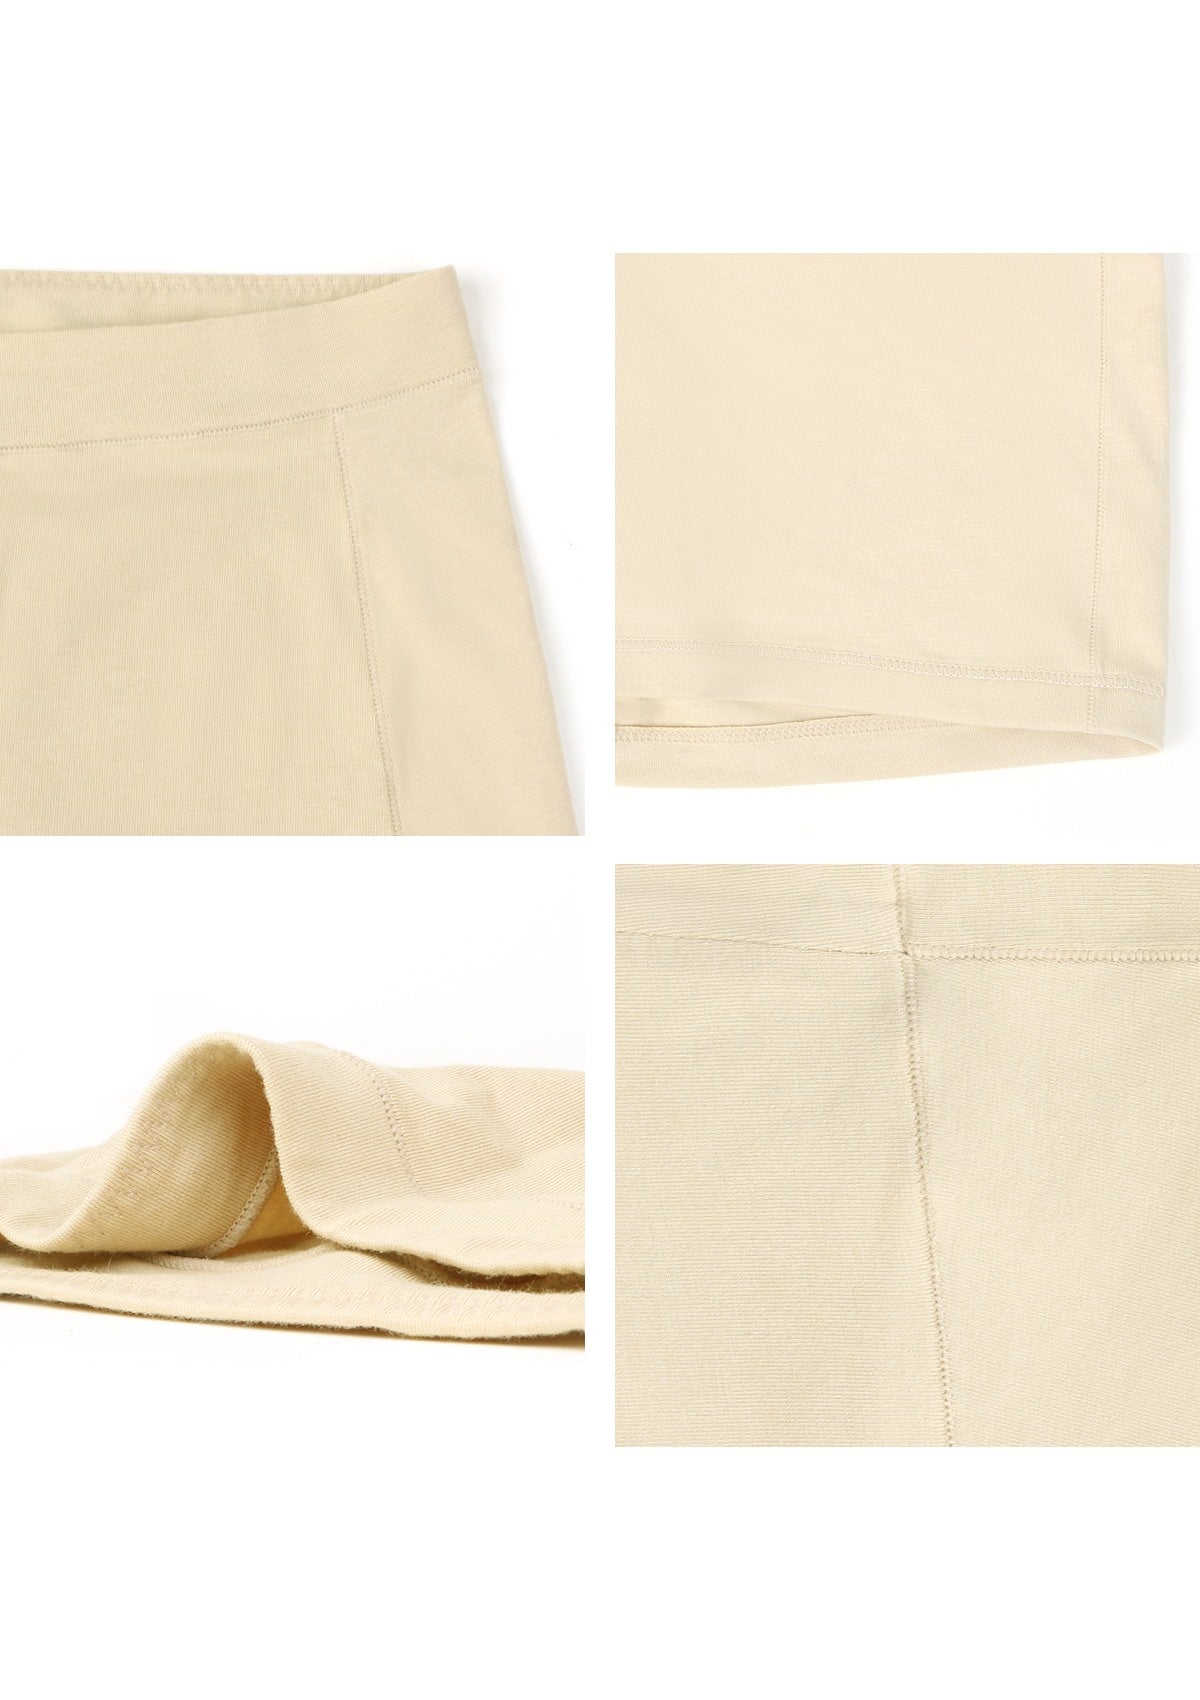 All-Day Comfort High-Rise Cotton Boyshorts Underwear 3 Pack - XXL / Black+White+Beige